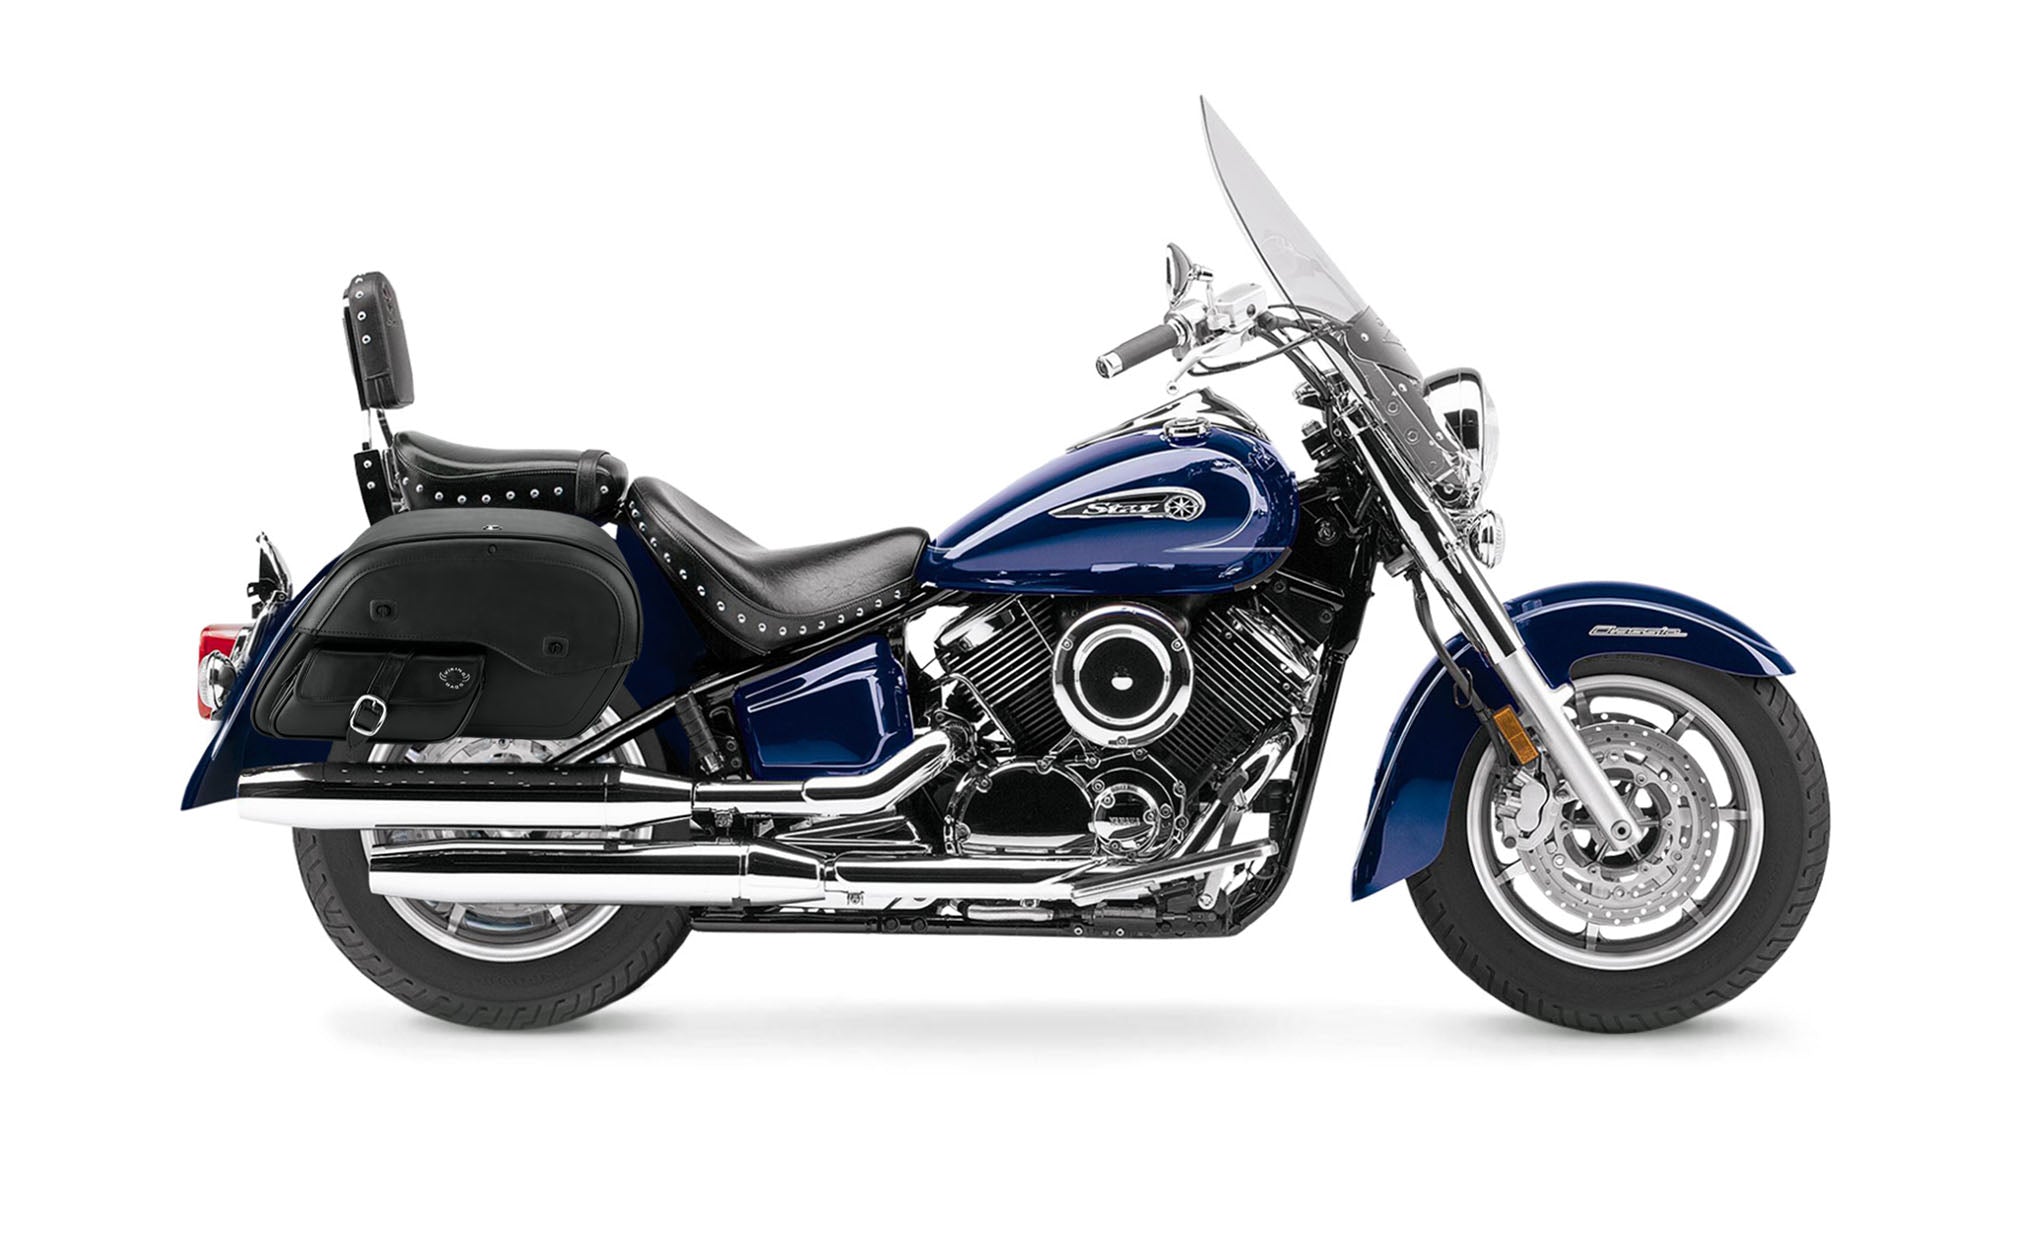 Viking Essential Side Pocket Large Yamaha Silverado Leather Motorcycle Saddlebags on Bike Photo @expand